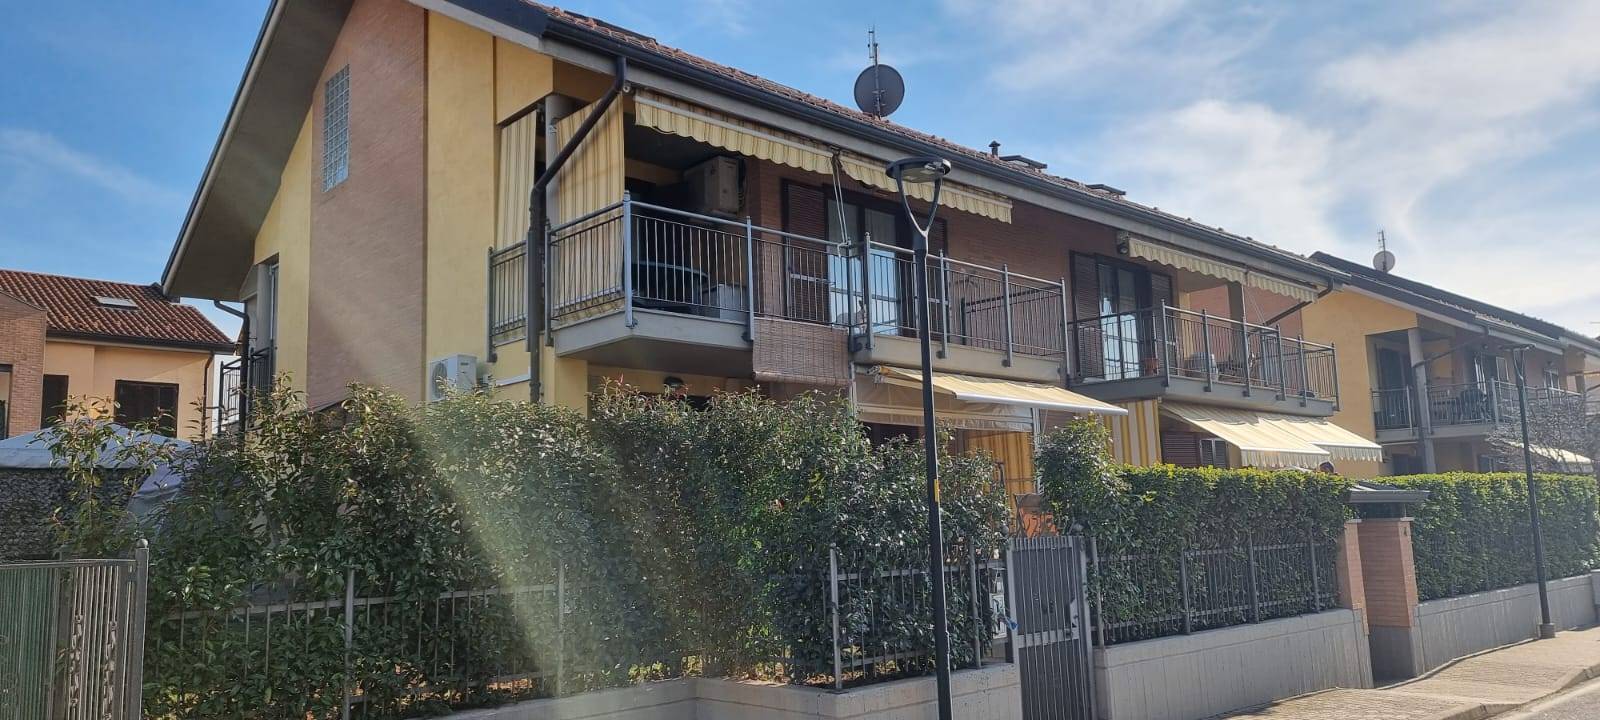 Appartamento in vendita a Volvera, 2 locali, prezzo € 122.000 | PortaleAgenzieImmobiliari.it